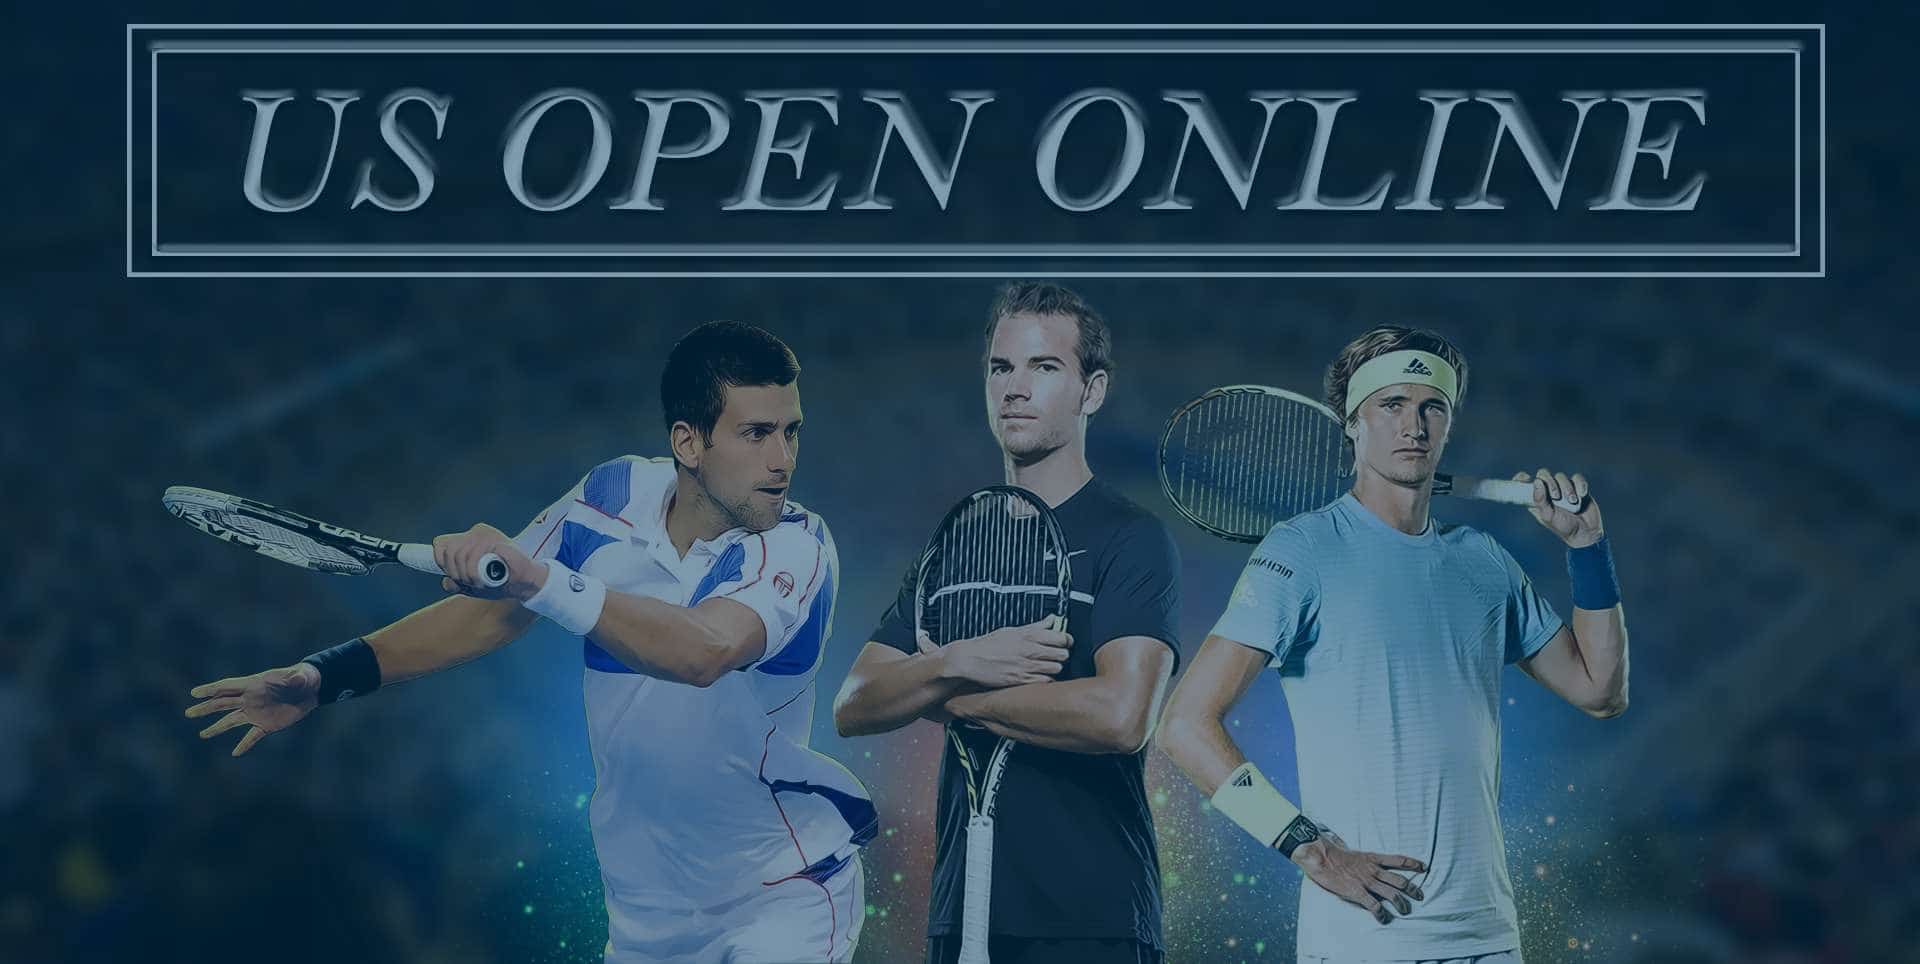 Us open tennis schedule